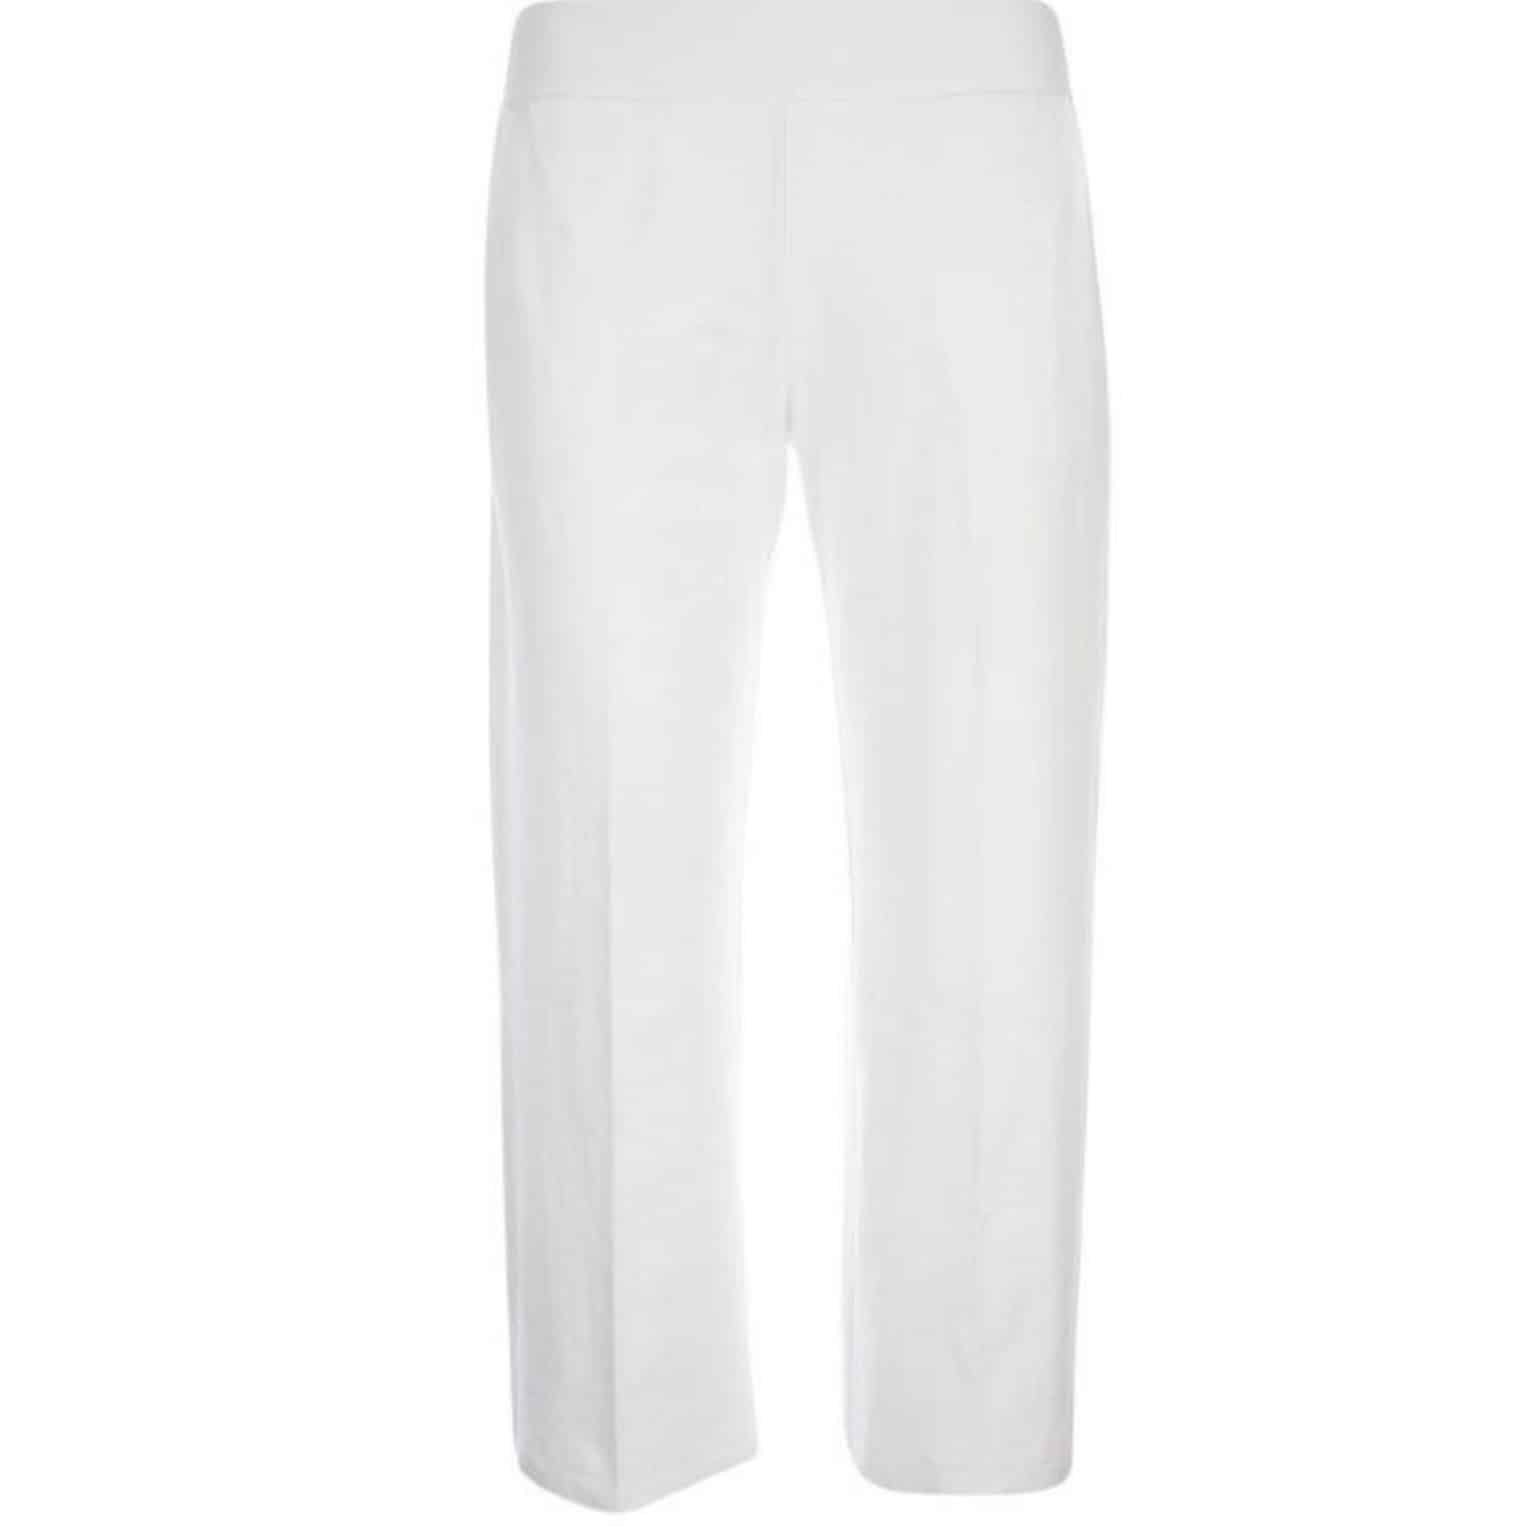 Loungestyle Hose Kate von Kenny S in weiß. Elastischer Gummibund, Hose mit weitem Bein. Artikel 471190 bei Mode Sabine Lemke in Winnenden oder online shoppen